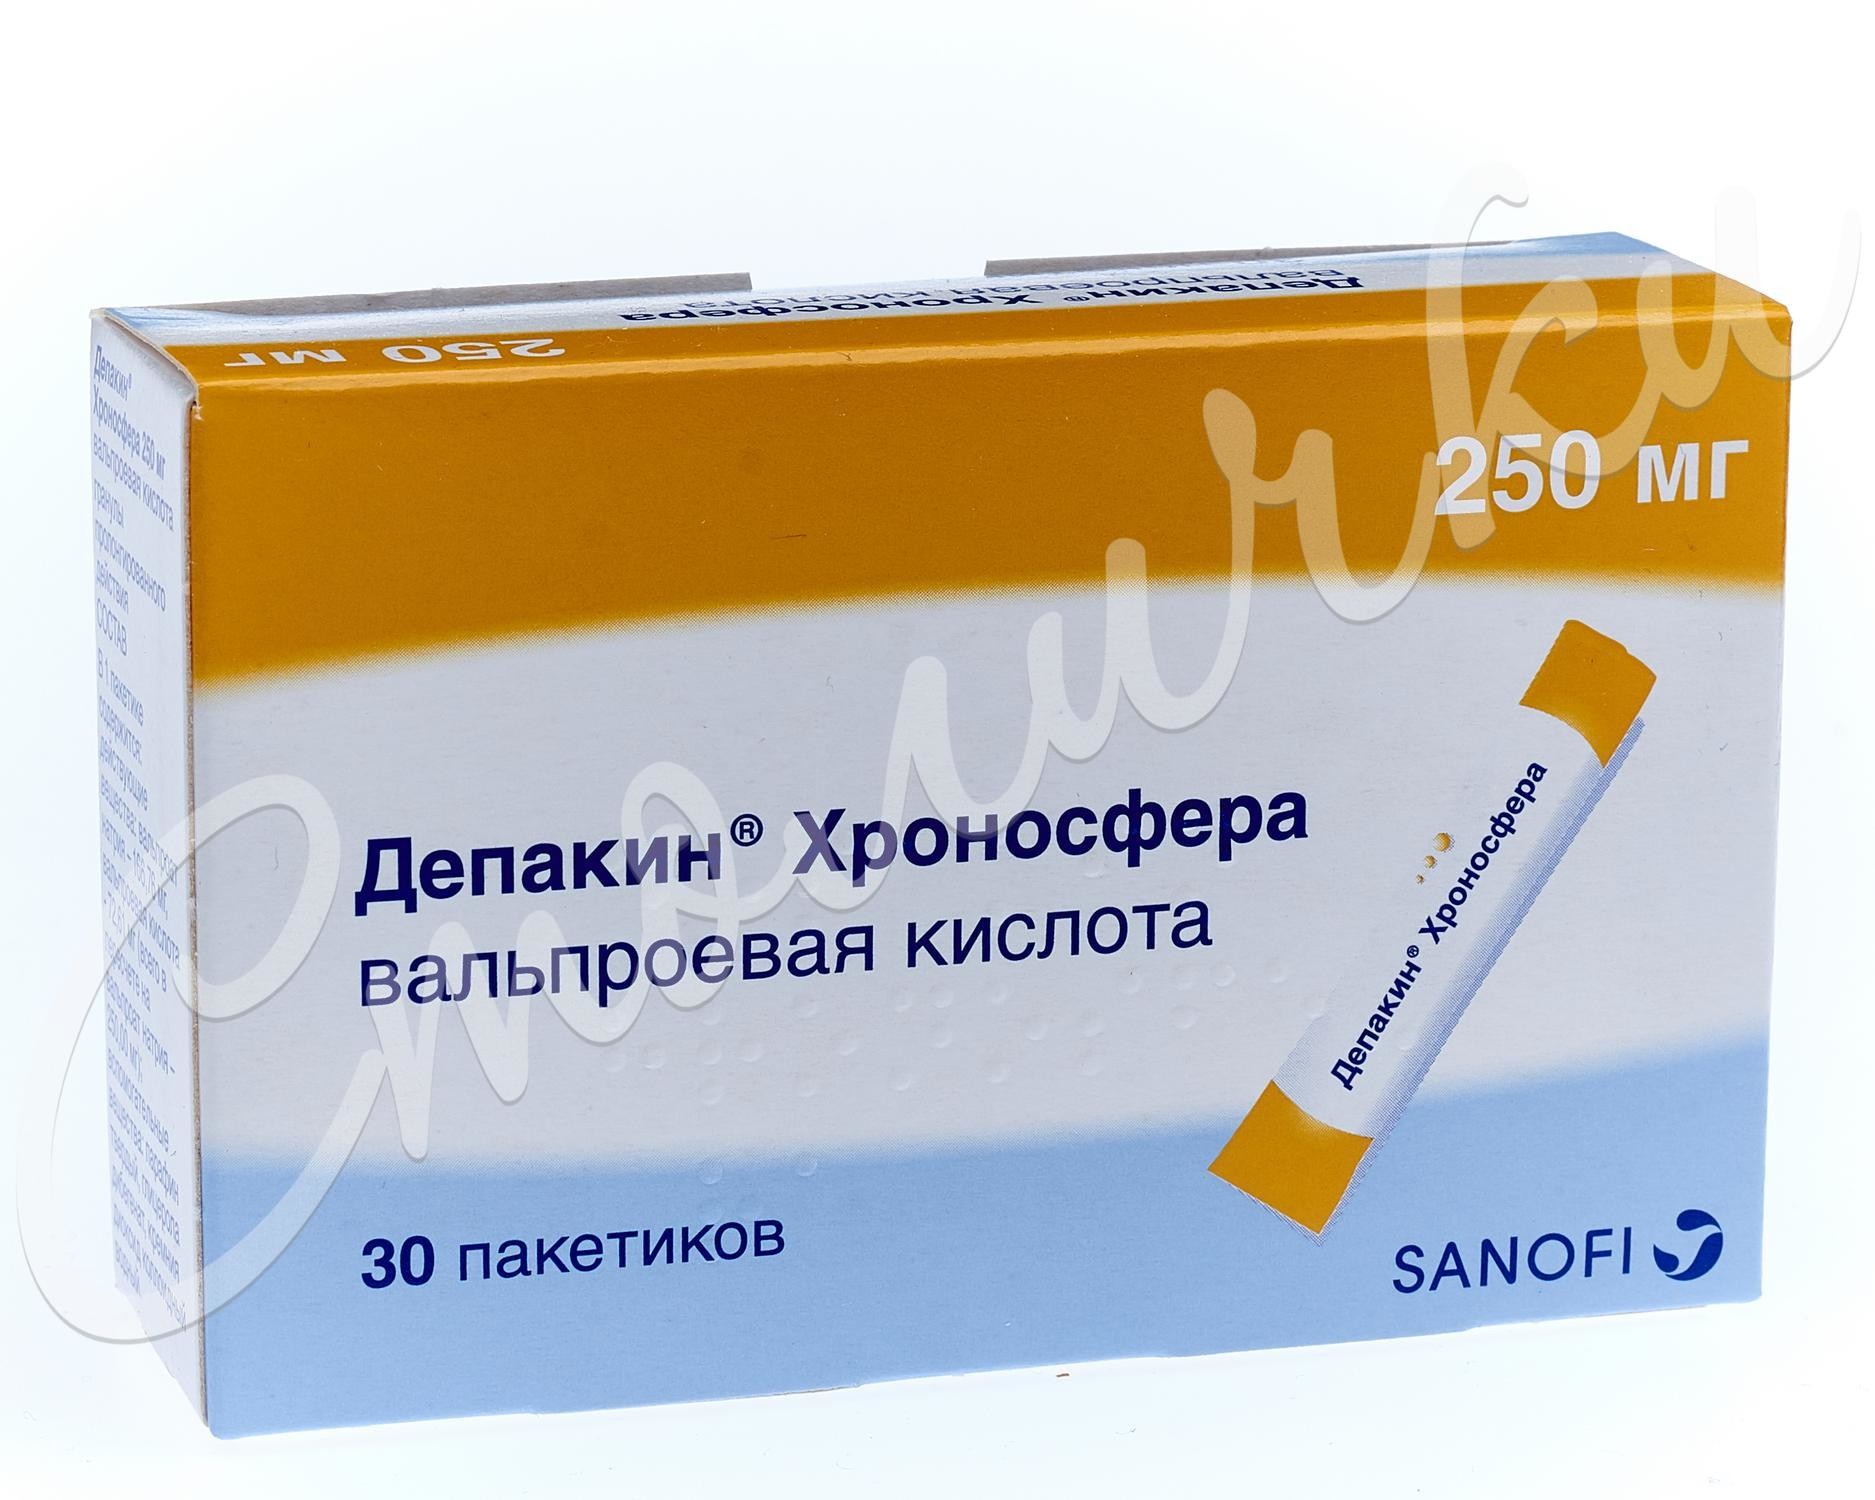 Депакин Хроно В Аптеках Санкт Петербурга